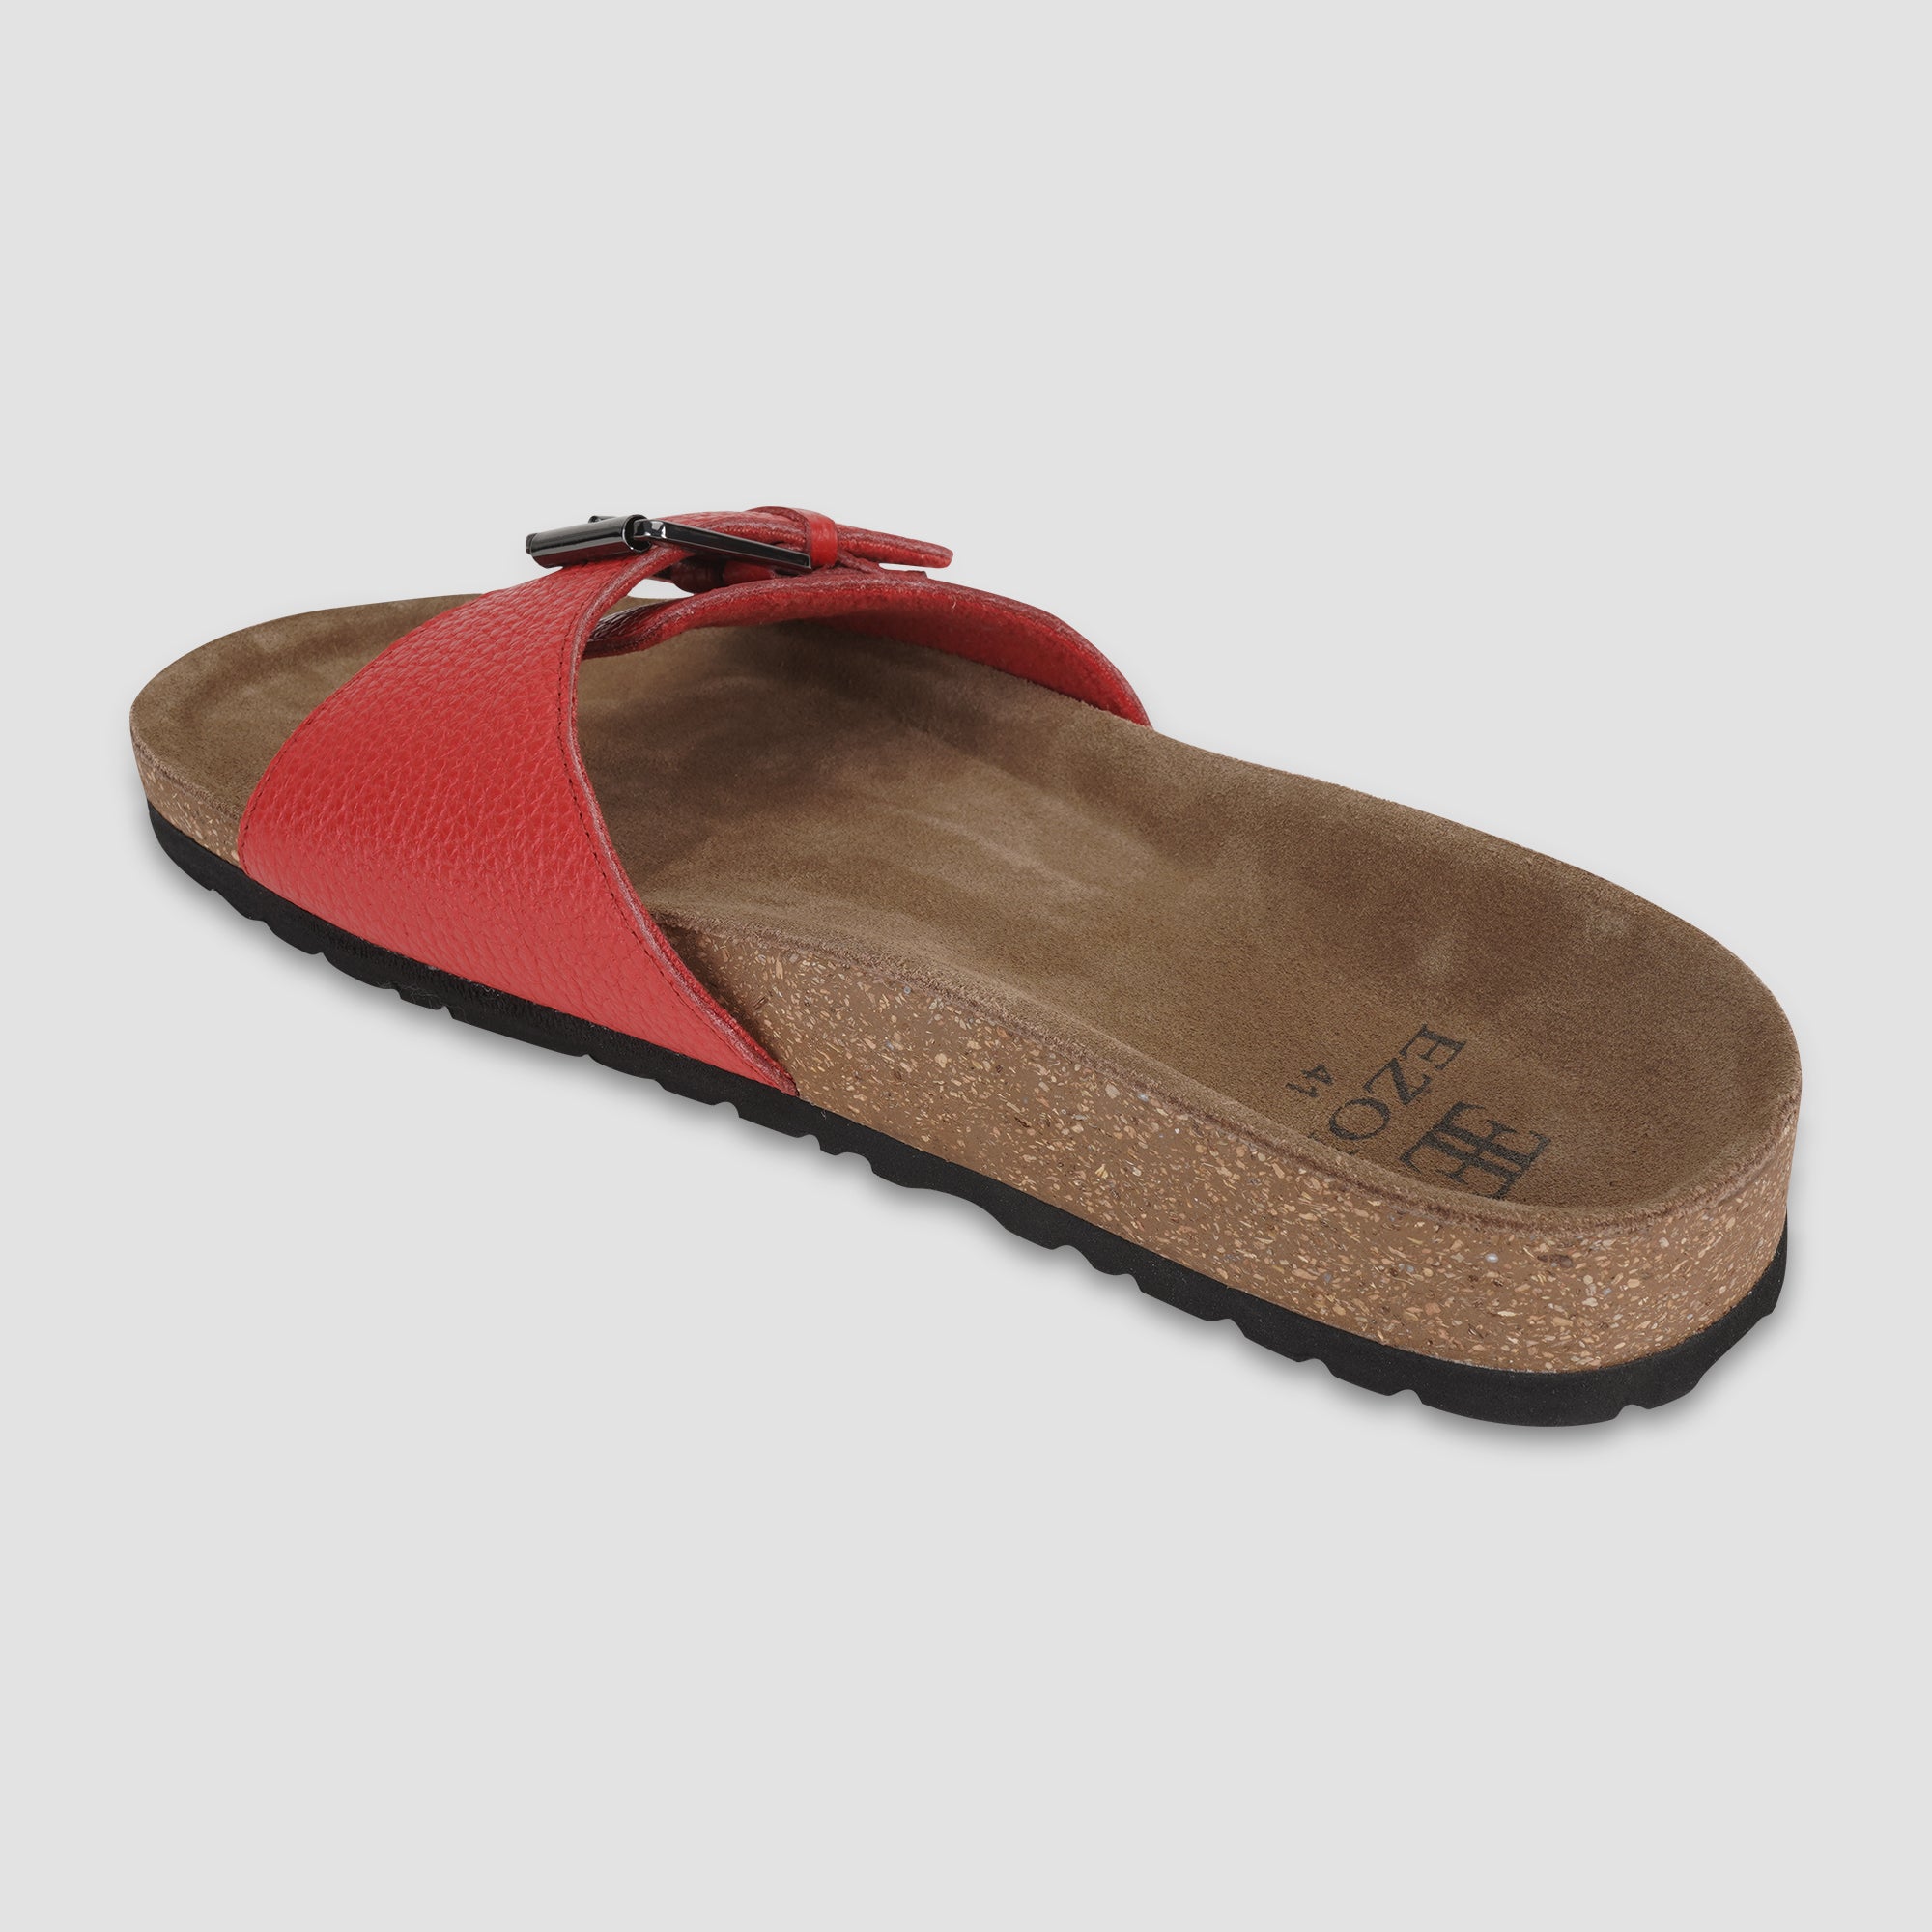 Ezok Red Leather Sandal For Men